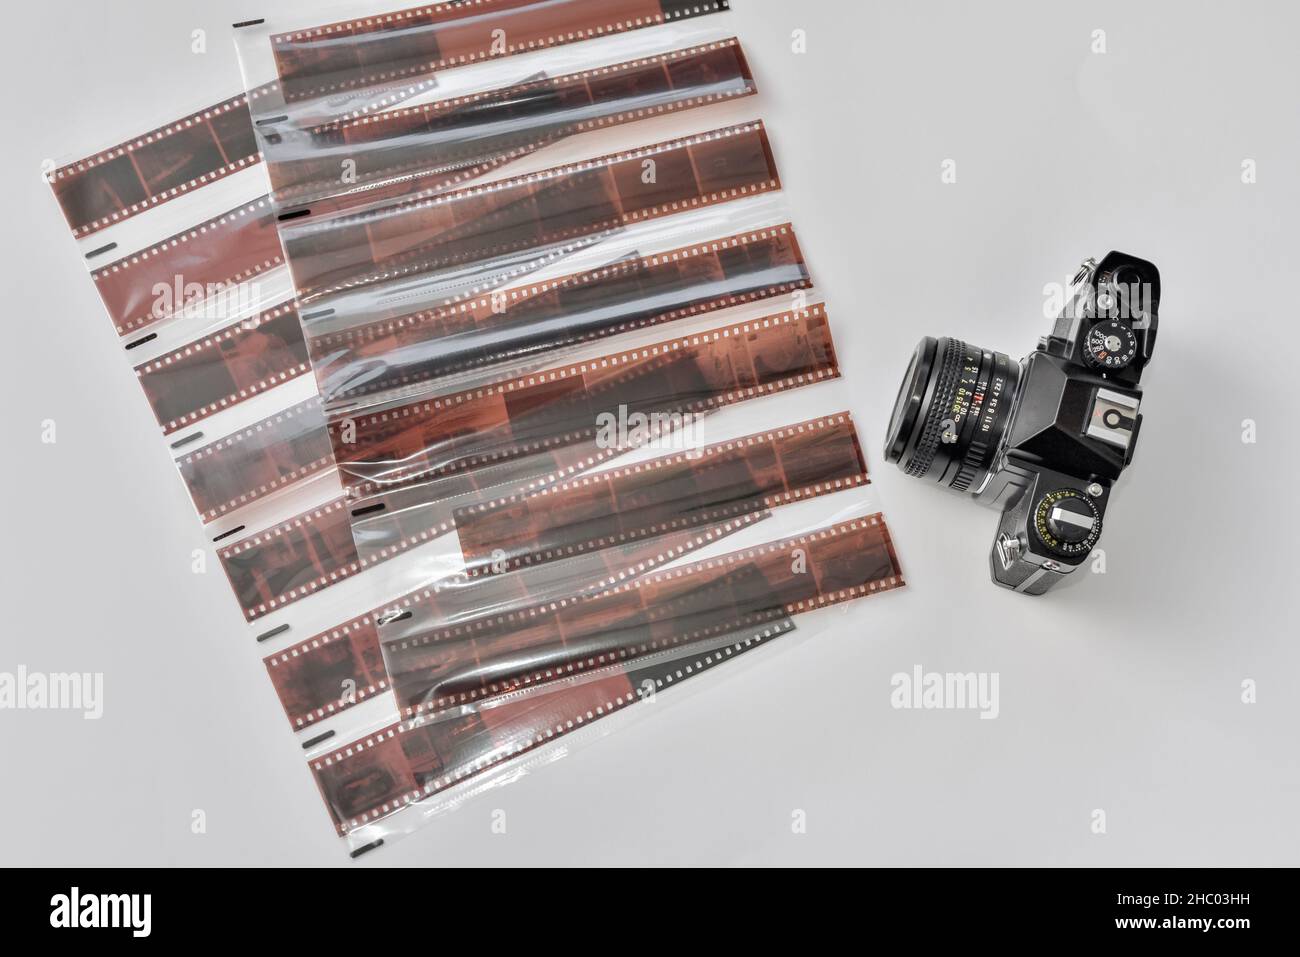 Caméra à film analogique avec 35mm formats de films négatifs dans des pochettes de protection pour archiver vos films et vos souvenirs Banque D'Images